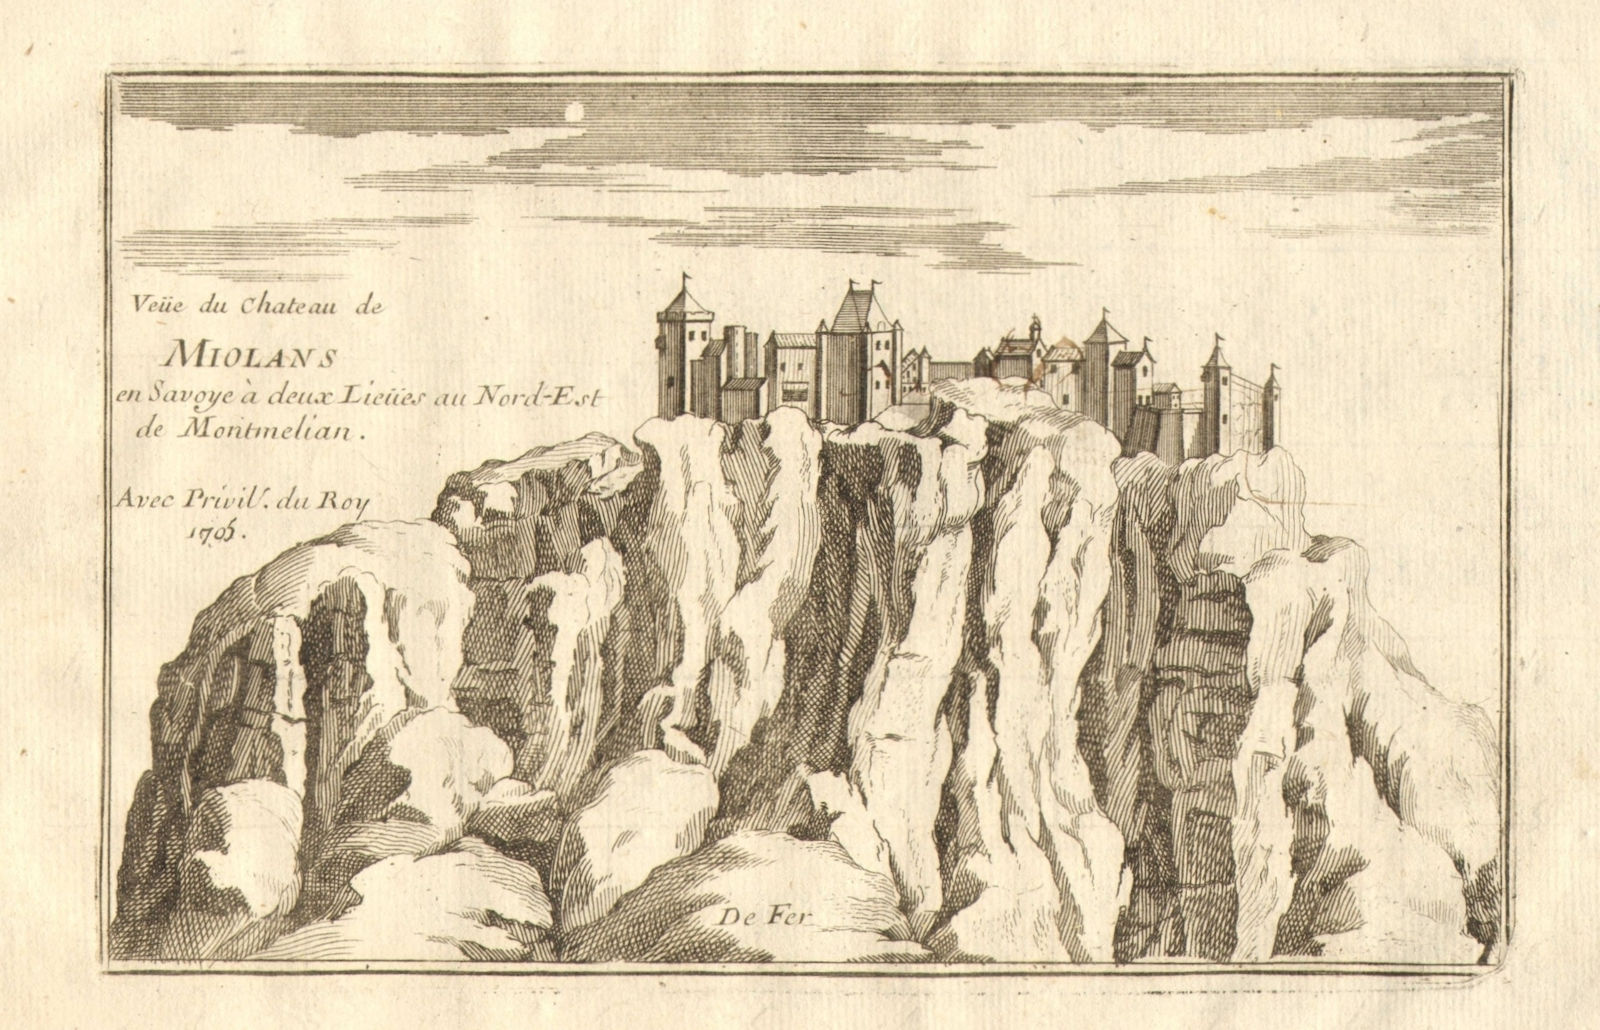 'Veue du Chateau de Miolans en Savoye'. Fortress of Miolans, Savoie. DE FER 1705